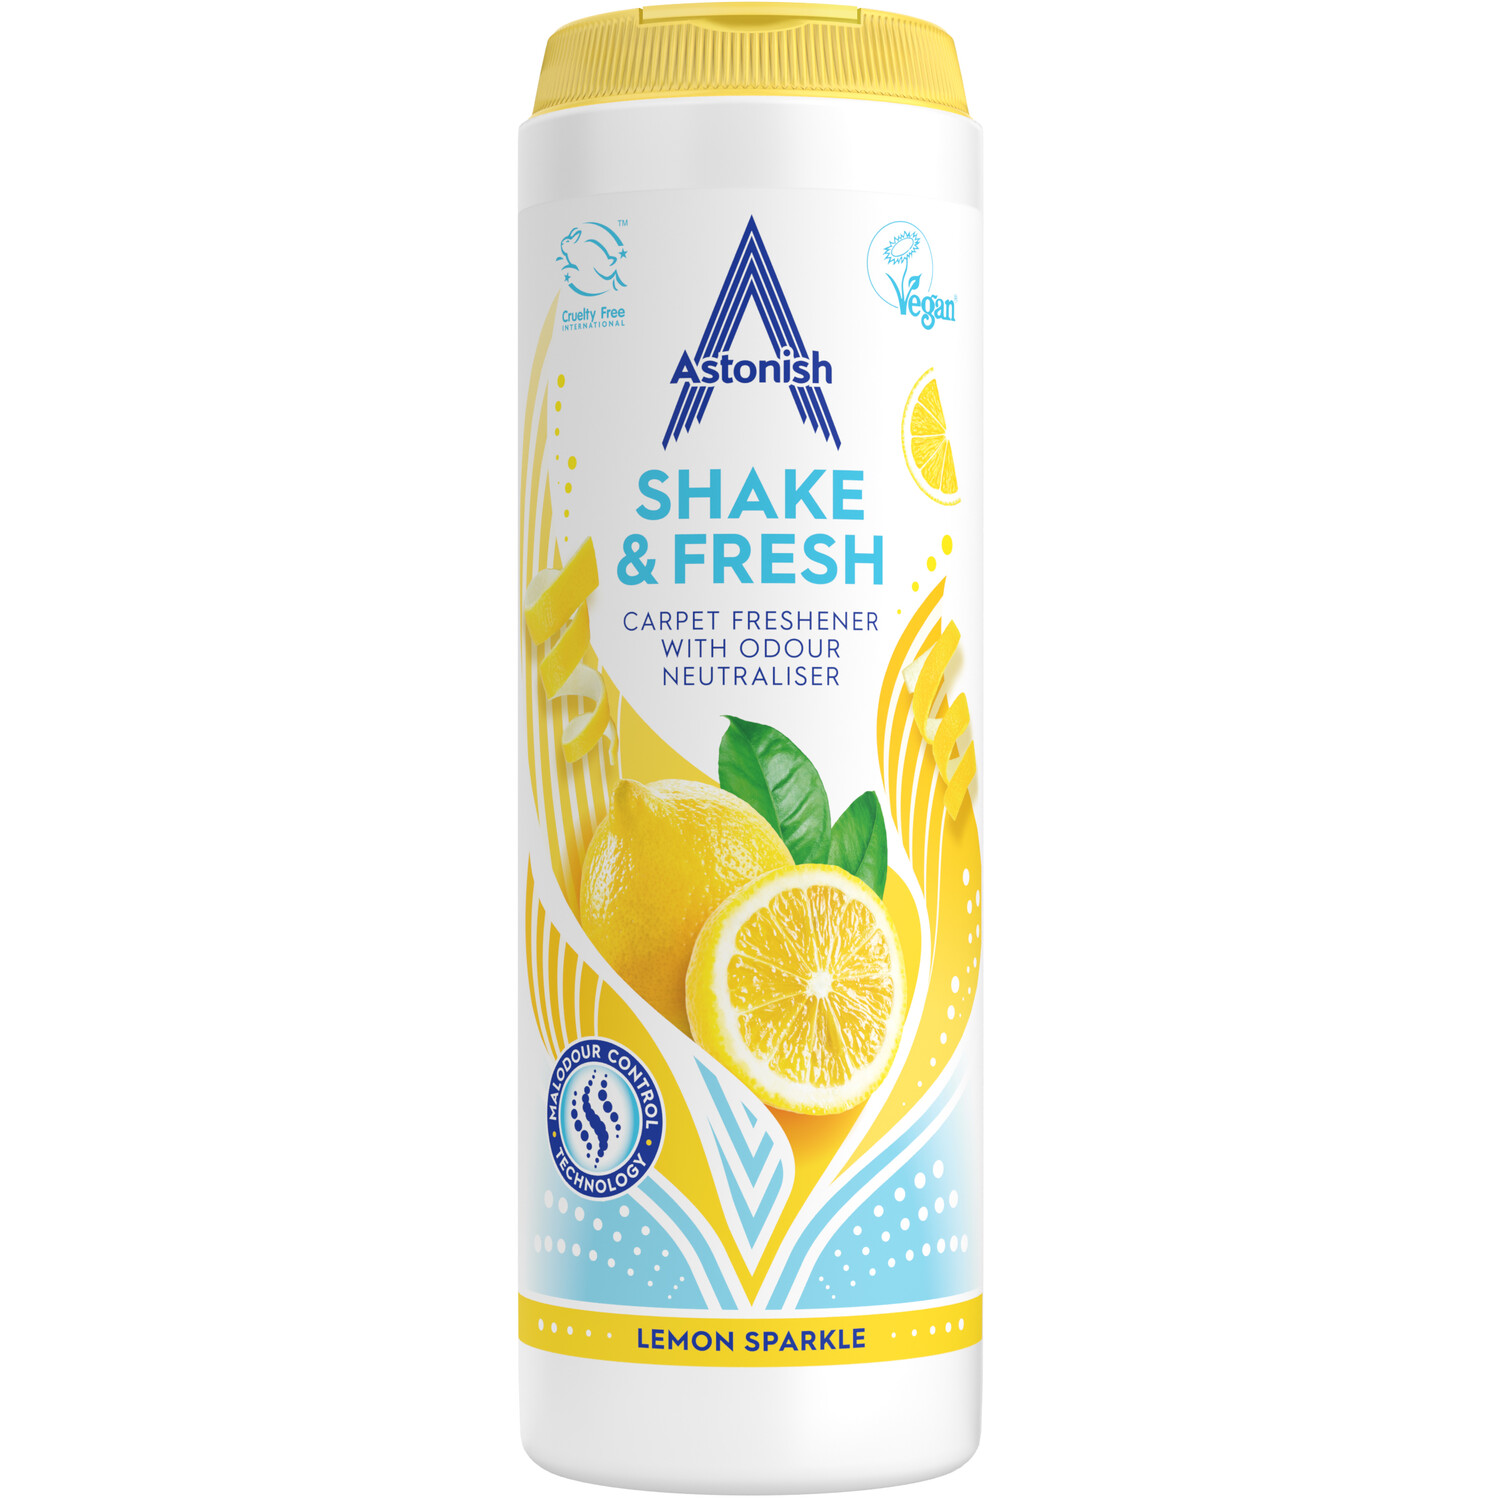 Astonish Shake and Fresh Carpet Freshener - Lemon Sparkle Image